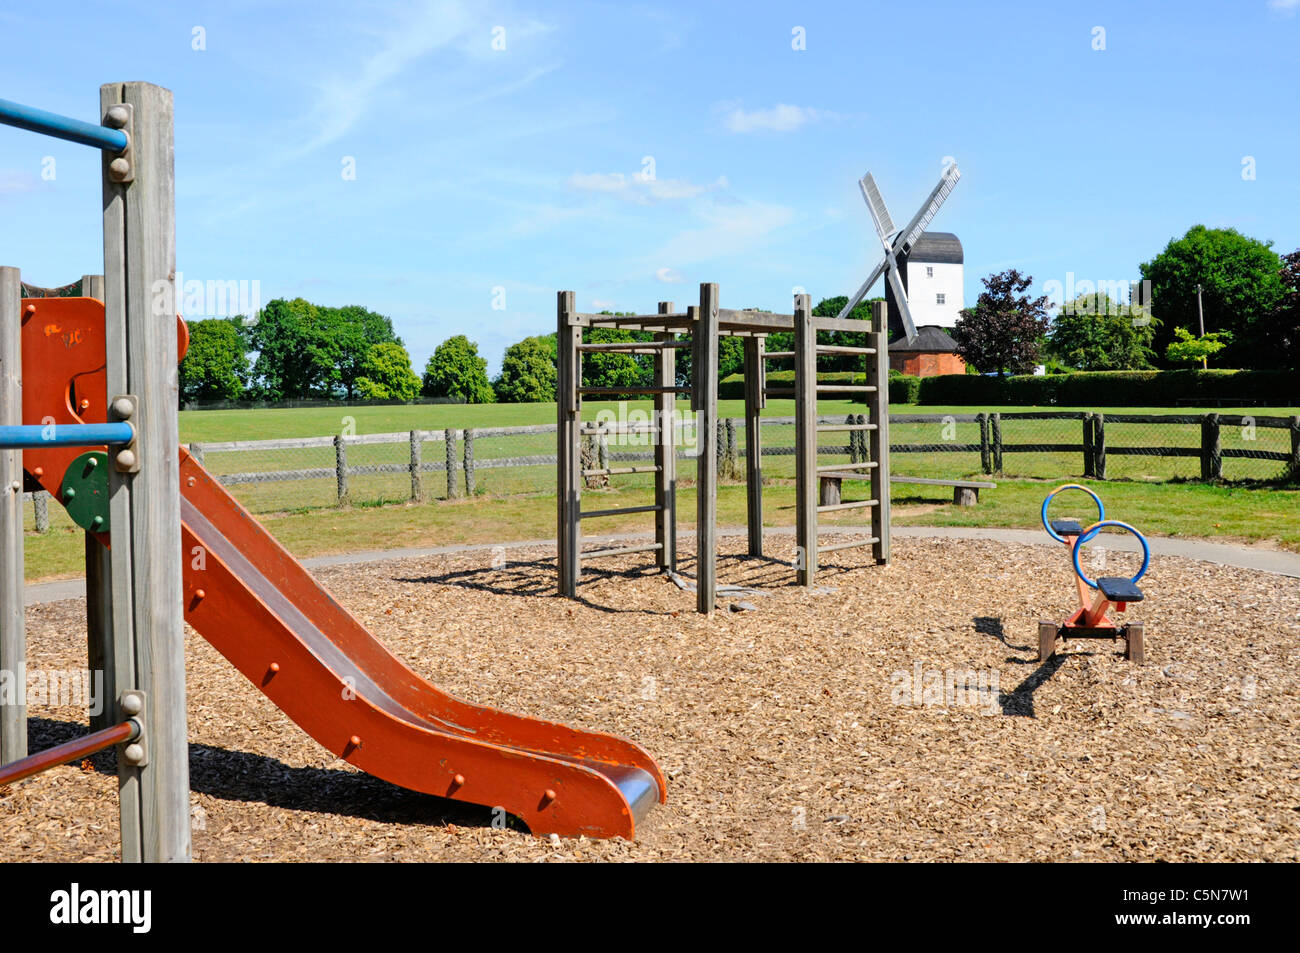 Parco giochi slide & arrampicata in frame recintata area giochi per i bambini sul verde villaggio con Mountnessing post mill windmill Brentwood Essex Inghilterra UKUK Foto Stock